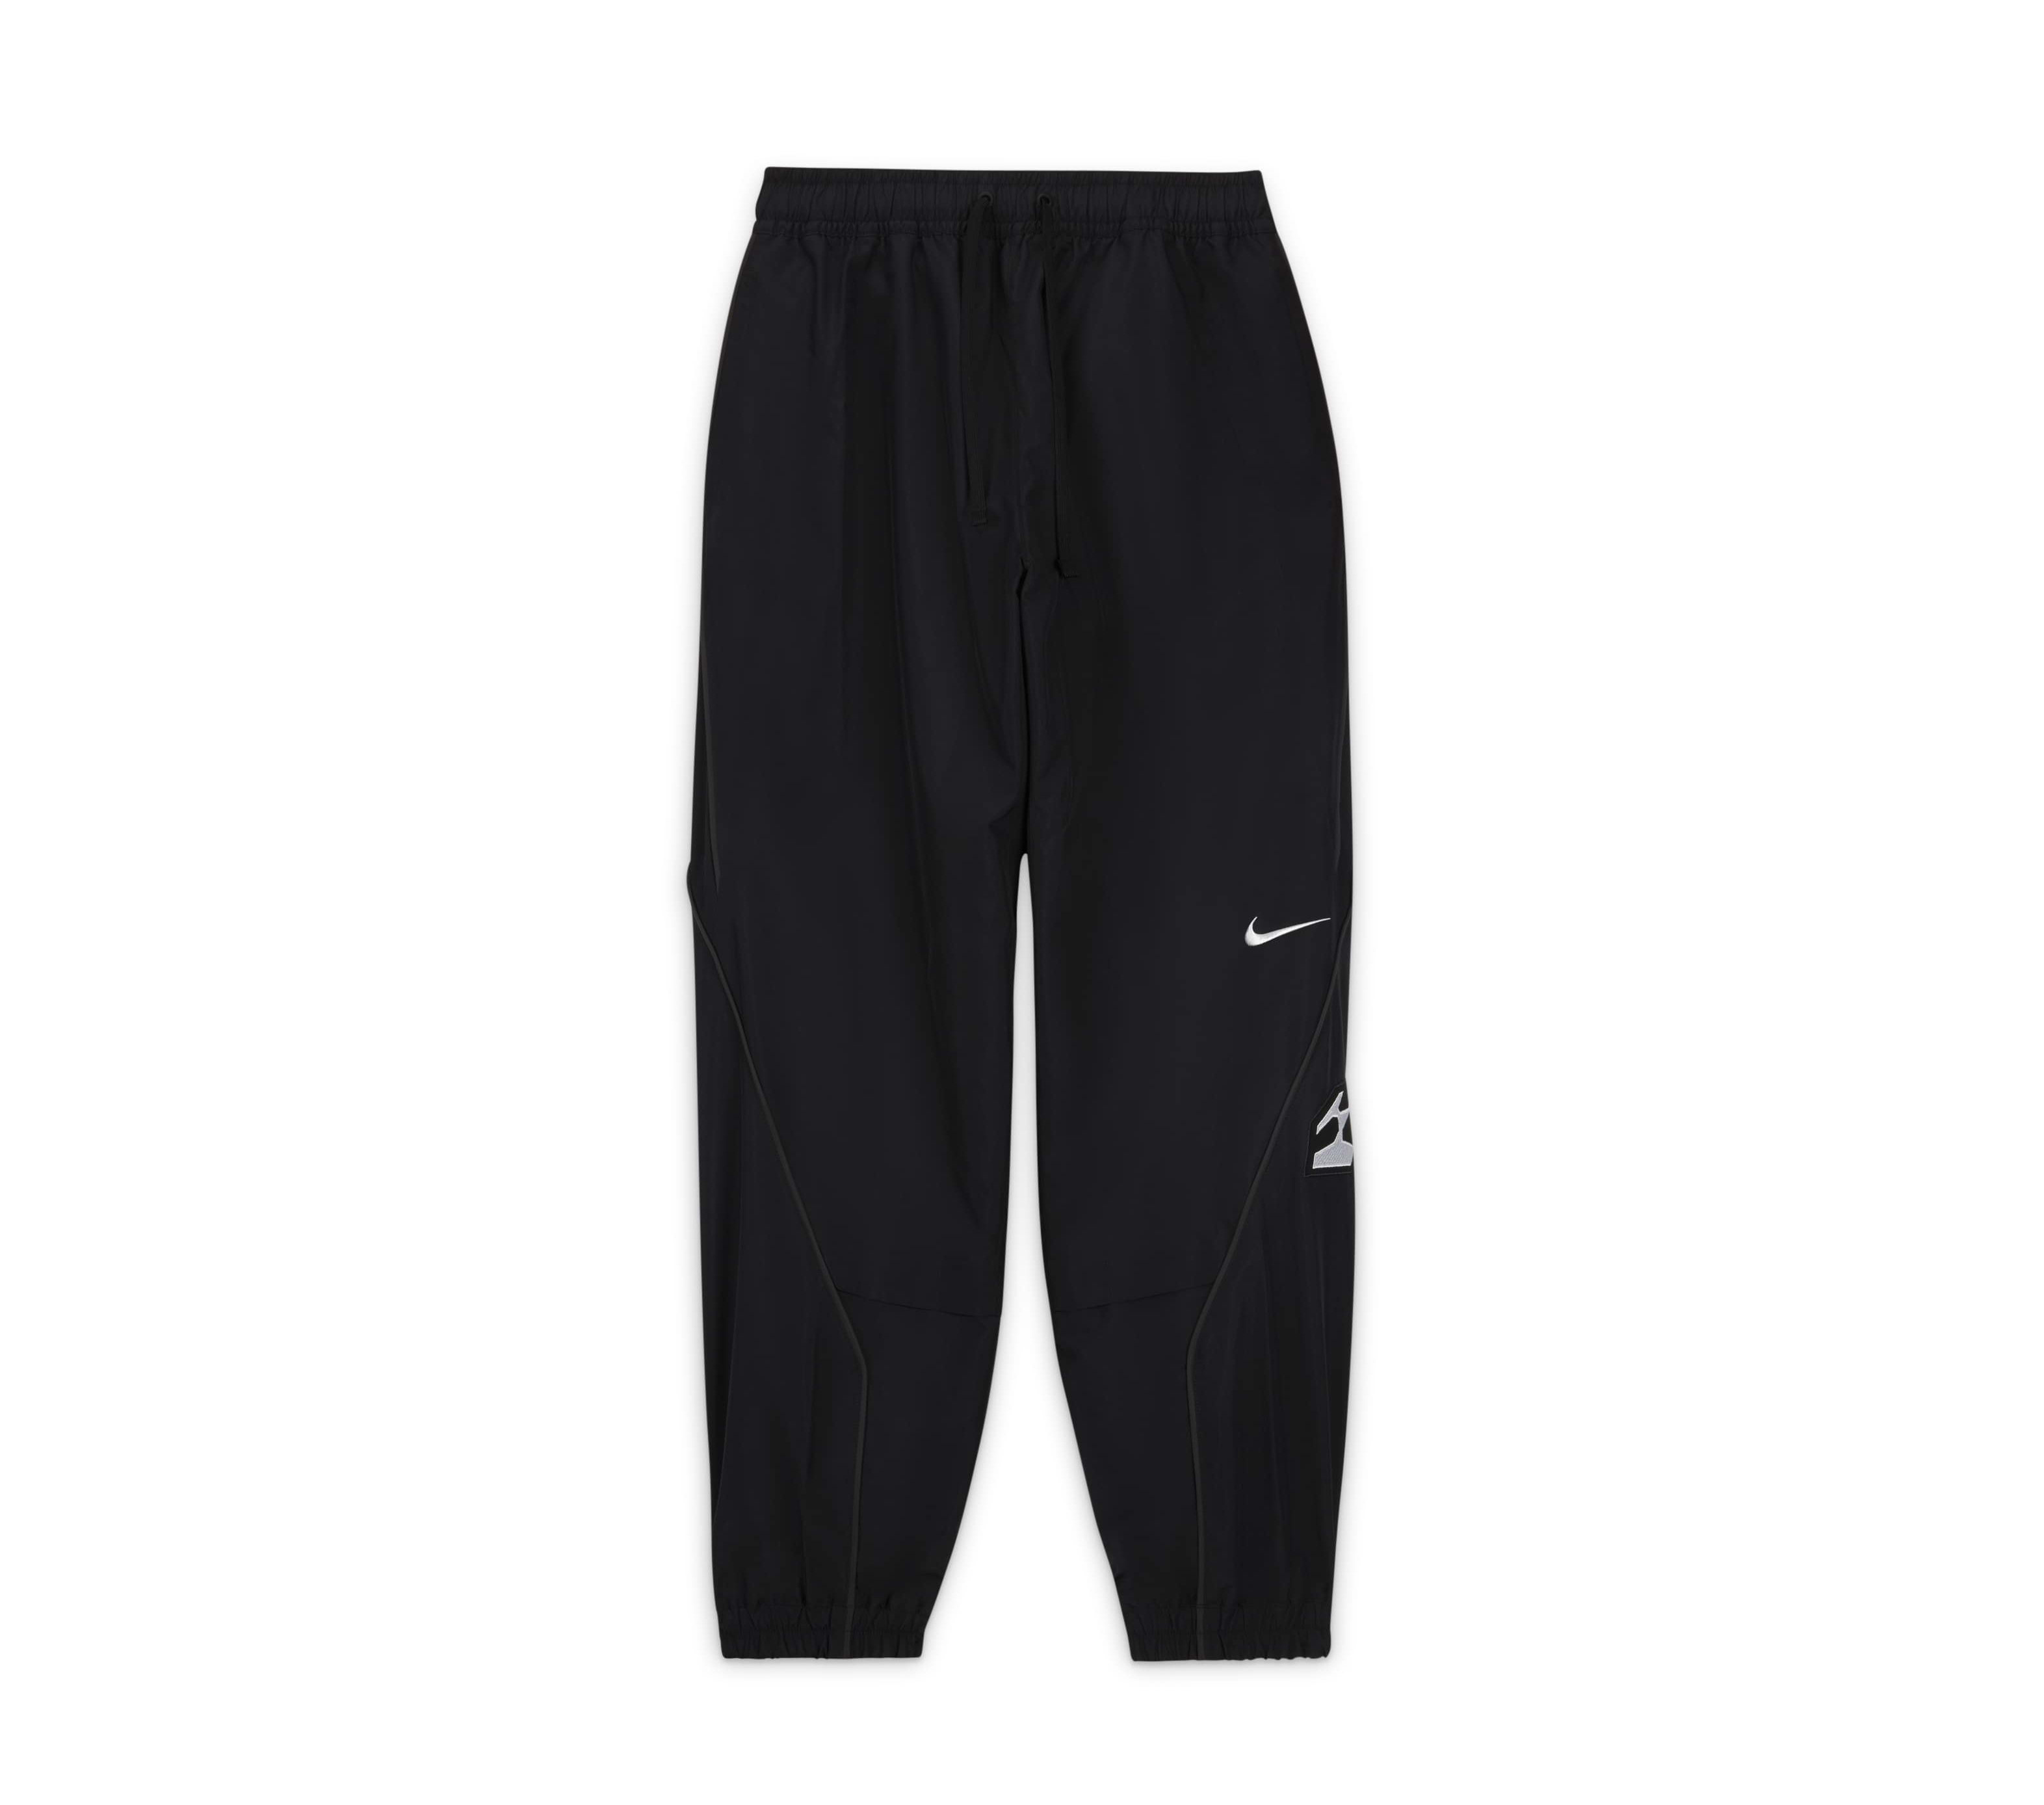 Acronym x Nike Woven Pants (Black)